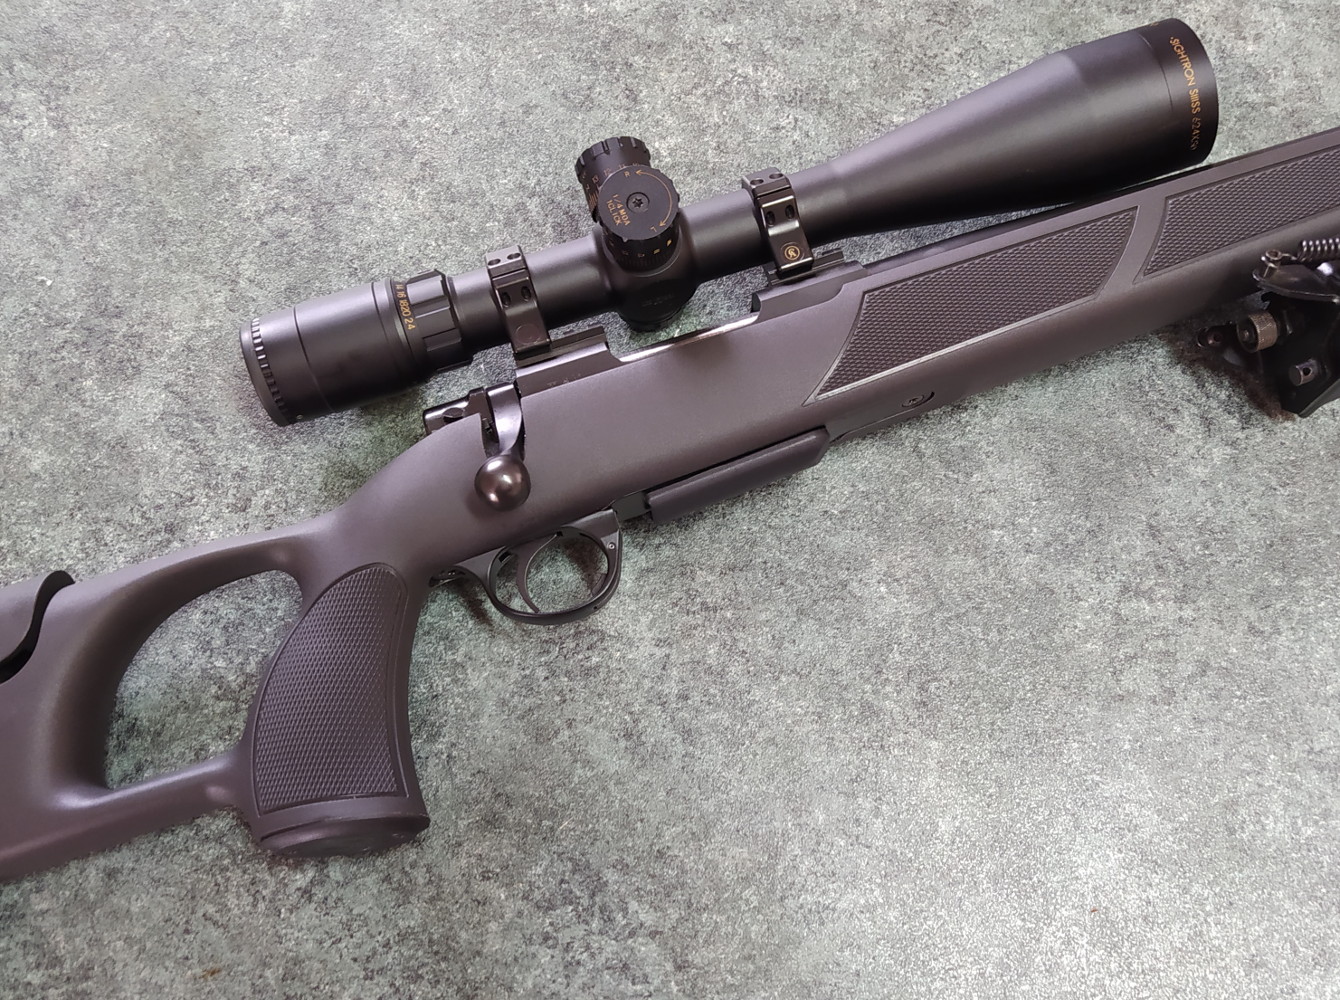 carabina sabatti hunter competition utilizzata per il test delle munizioni 223 remington